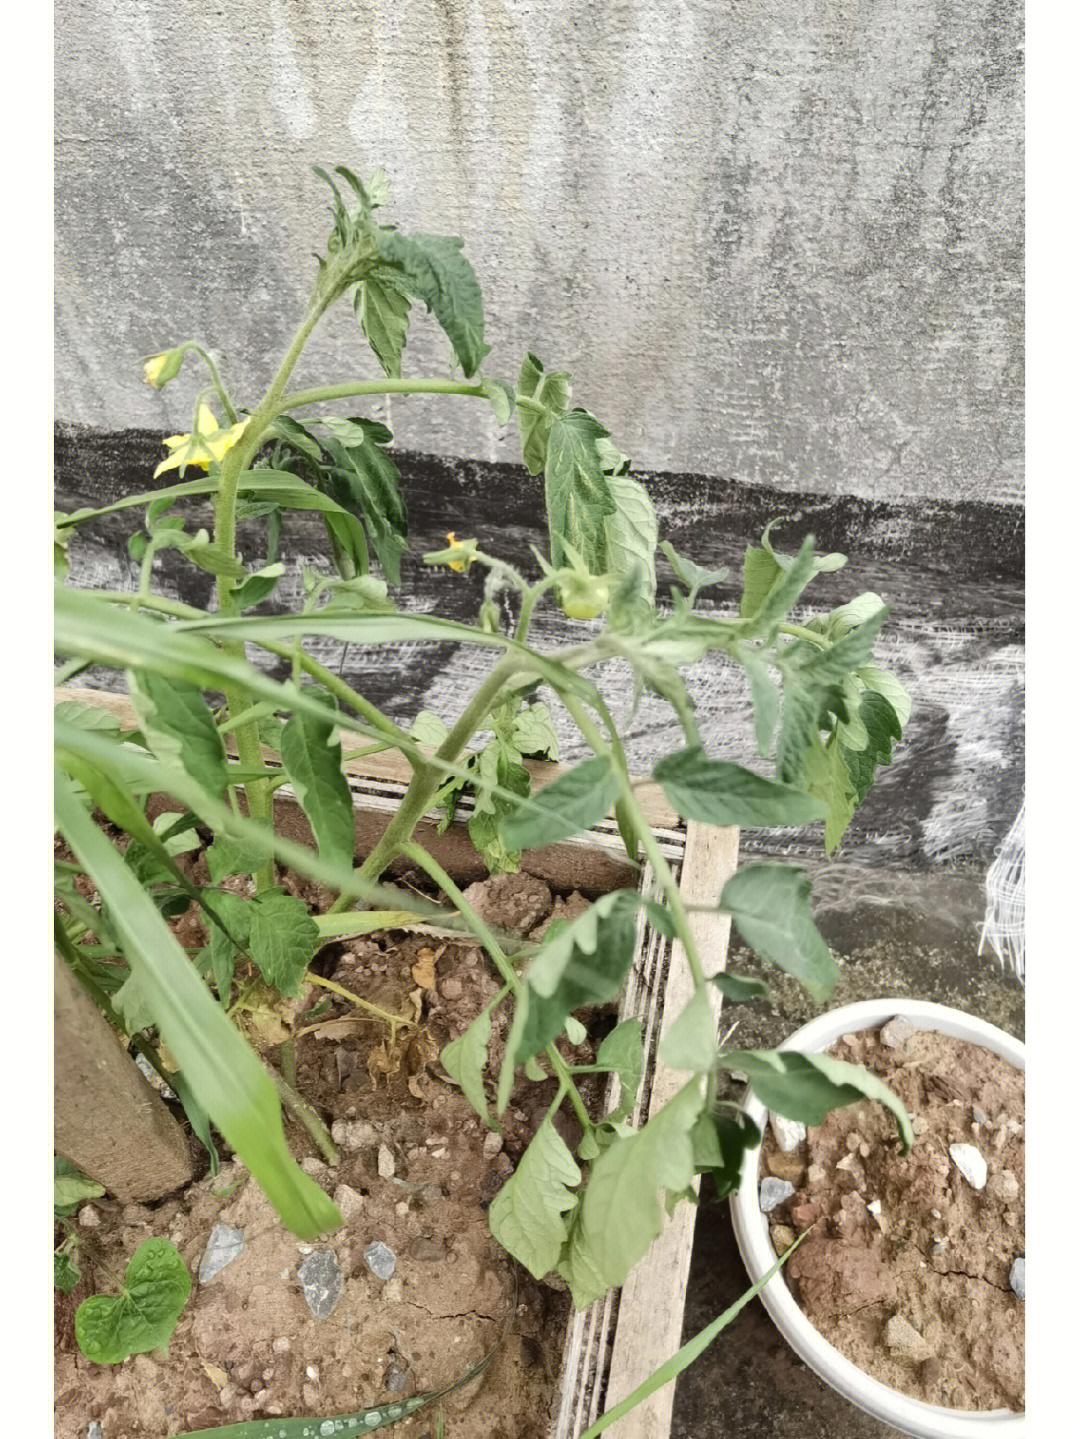 番茄种植  之前放楼顶的番茄苗,让他自生自灭的生长,被好心的阿姨放